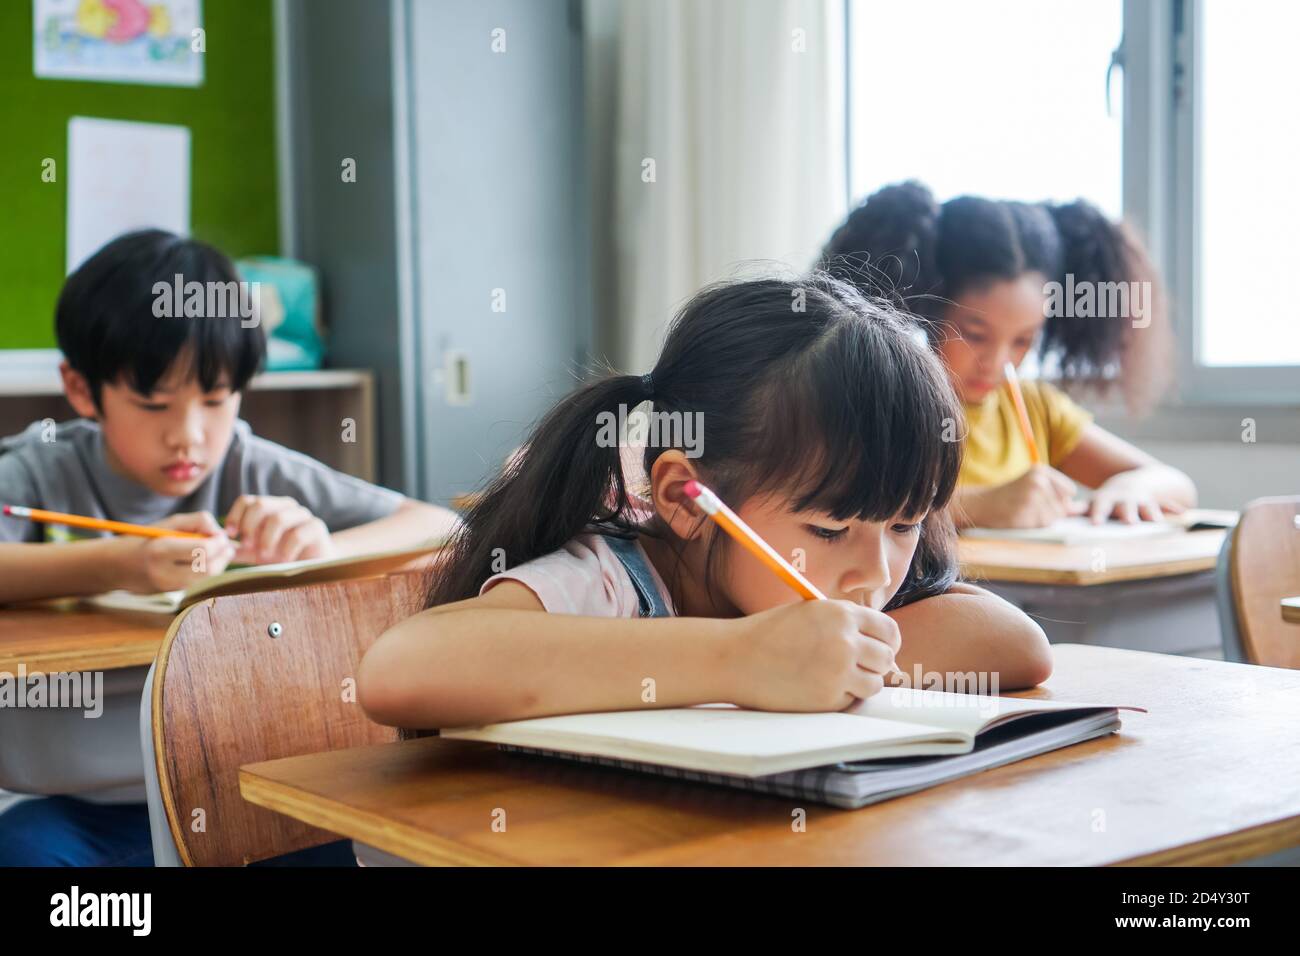 Niña de la escuela sentada en la escuela escribiendo en libro con lápiz, estudiando, educando, aprendiendo. Niños asiáticos en la clase. Diversidad de estudiantes. Foto de stock